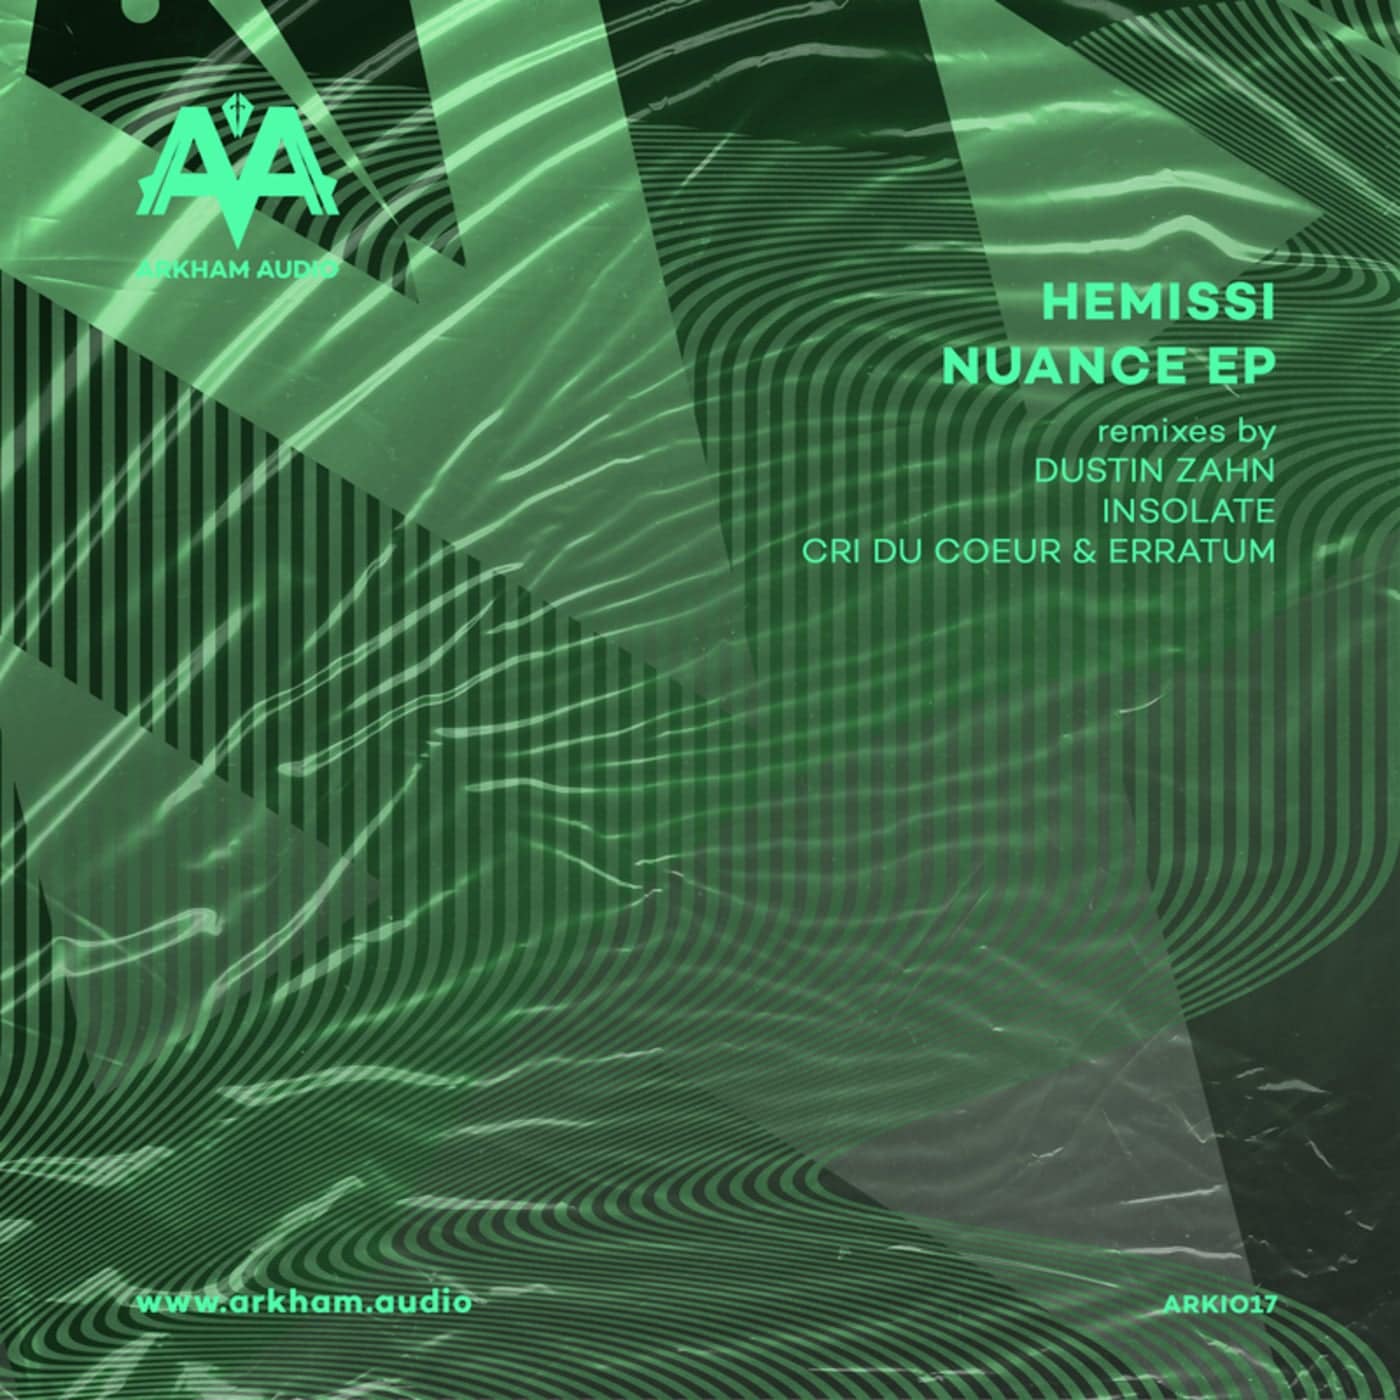 image cover: Hemissi - Nuance EP / ARKIO17